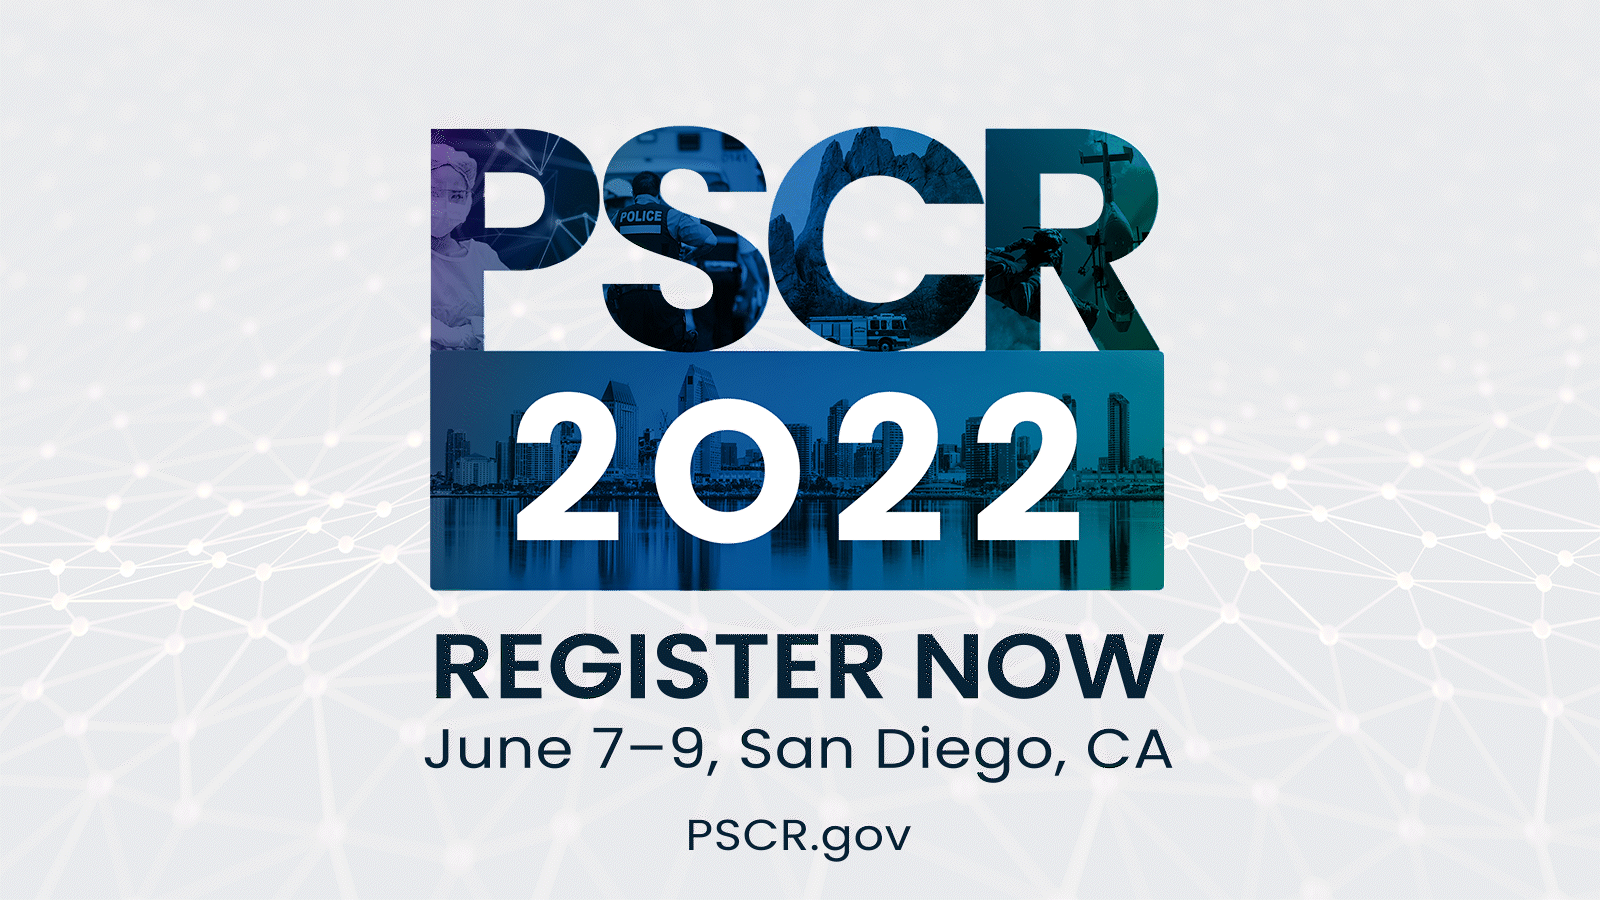 PSCR 2022. Register Now. June 7-9, San Diego, CA. PSCR.gov